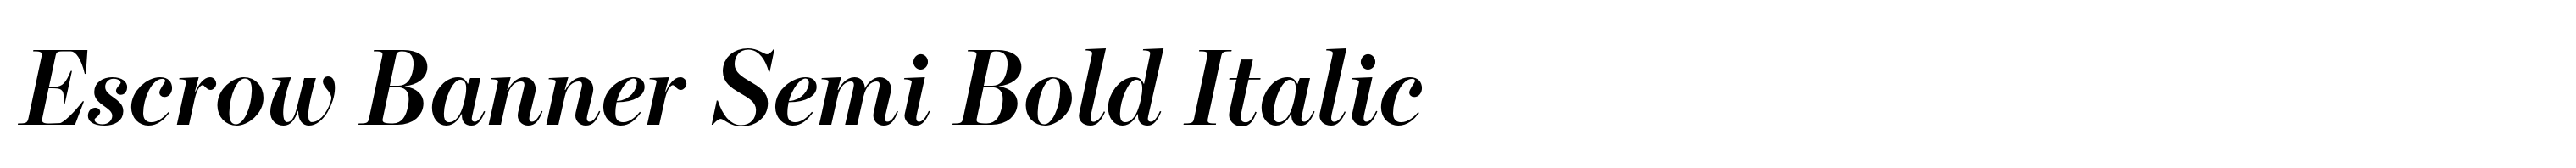 Escrow Banner Semi Bold Italic